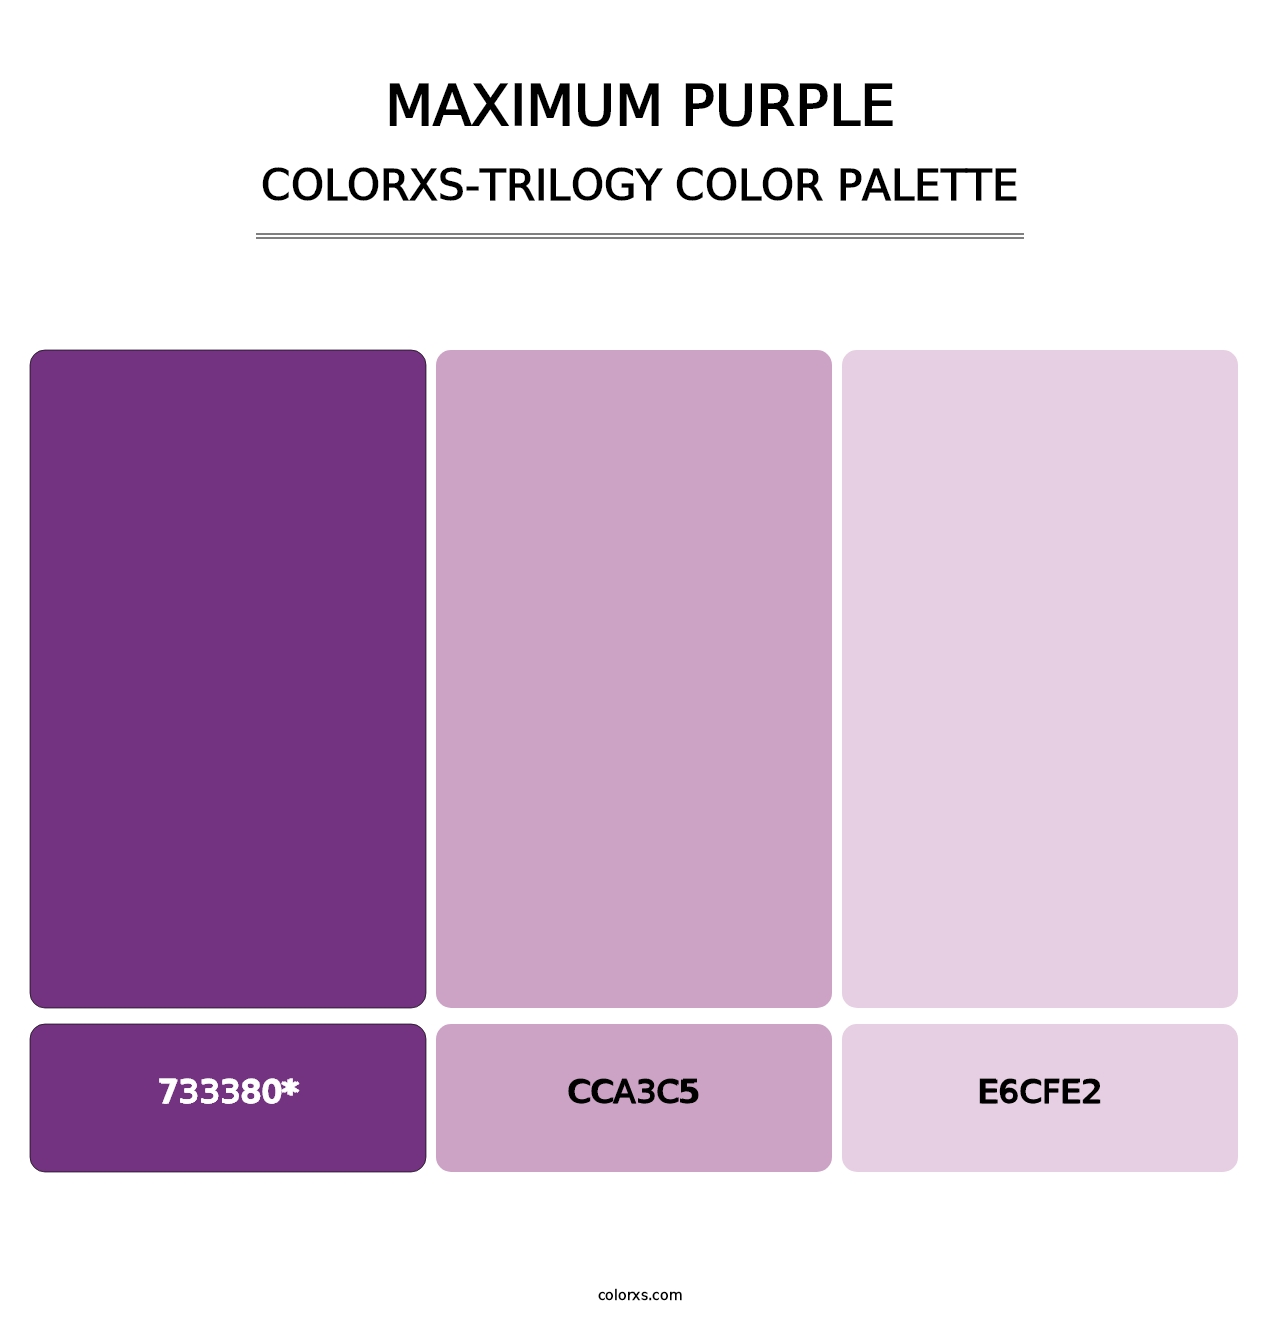 Maximum Purple - Colorxs Trilogy Palette